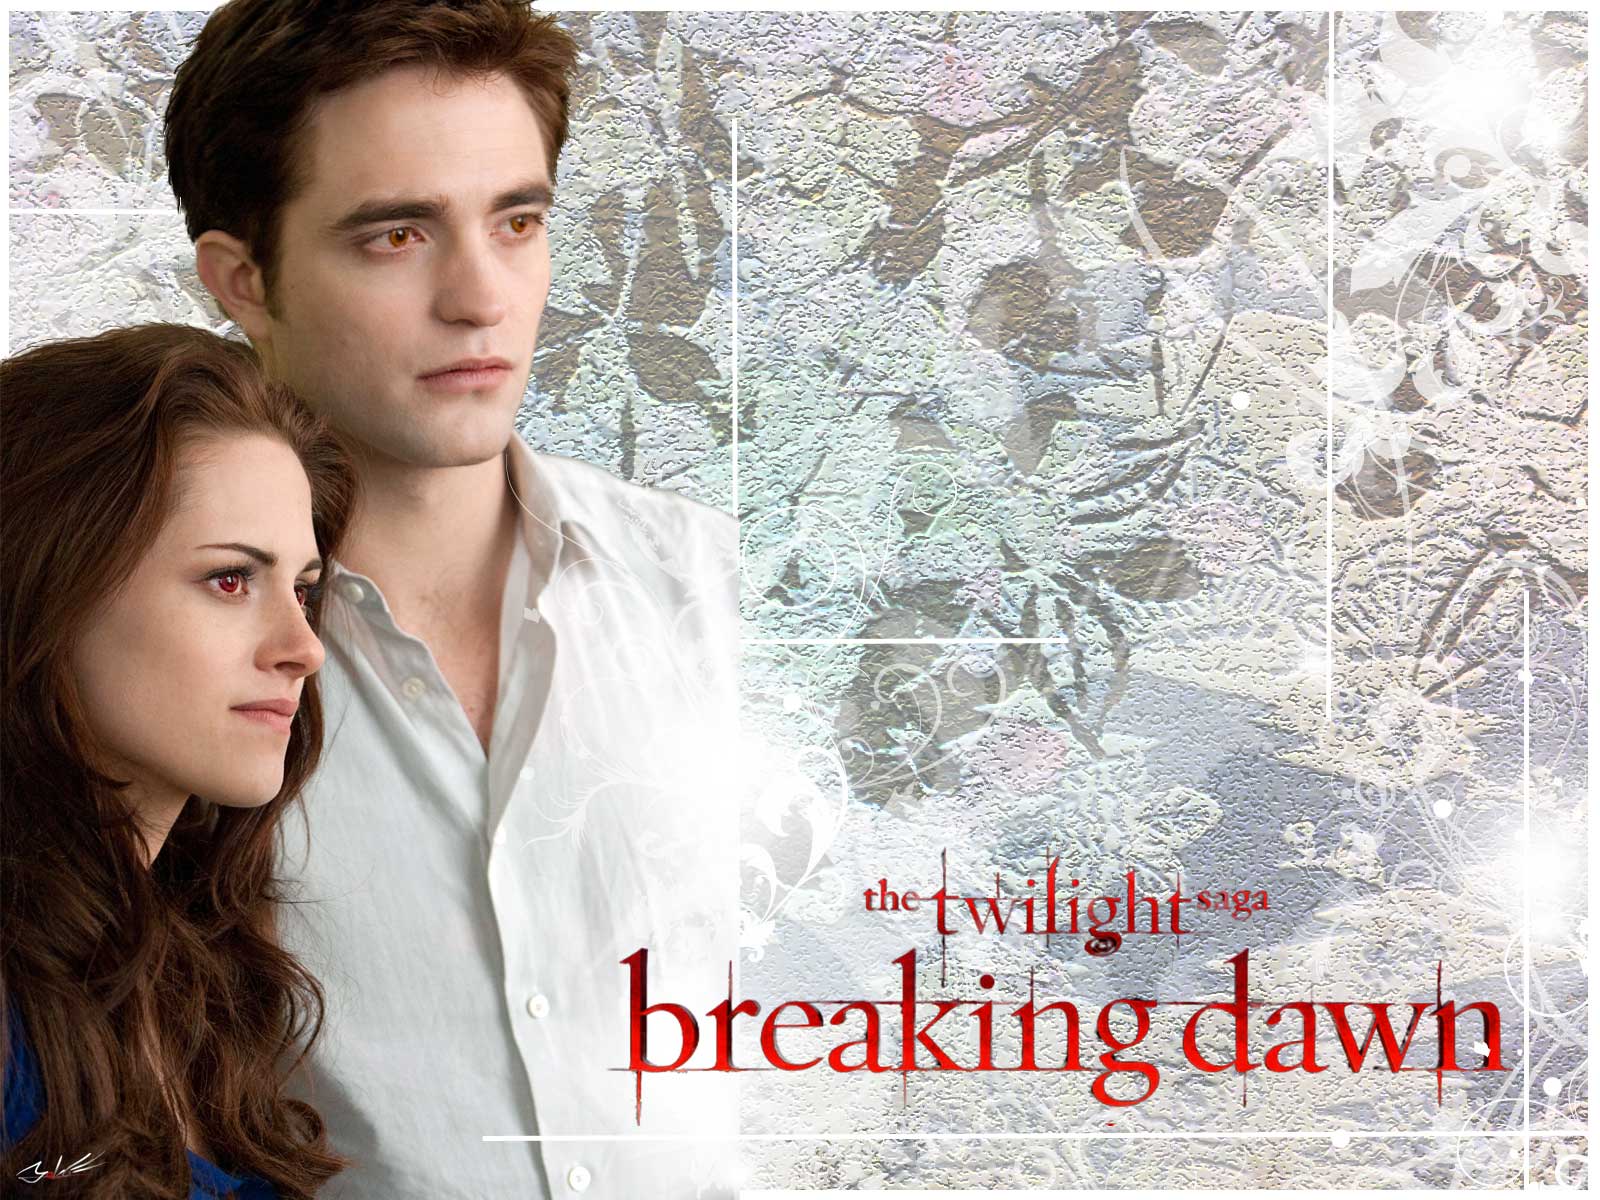 トワイライト ブレイキング ドーン Twilight Saga Breaking Dawn 壁紙 その4 Yoko S Movie Diary